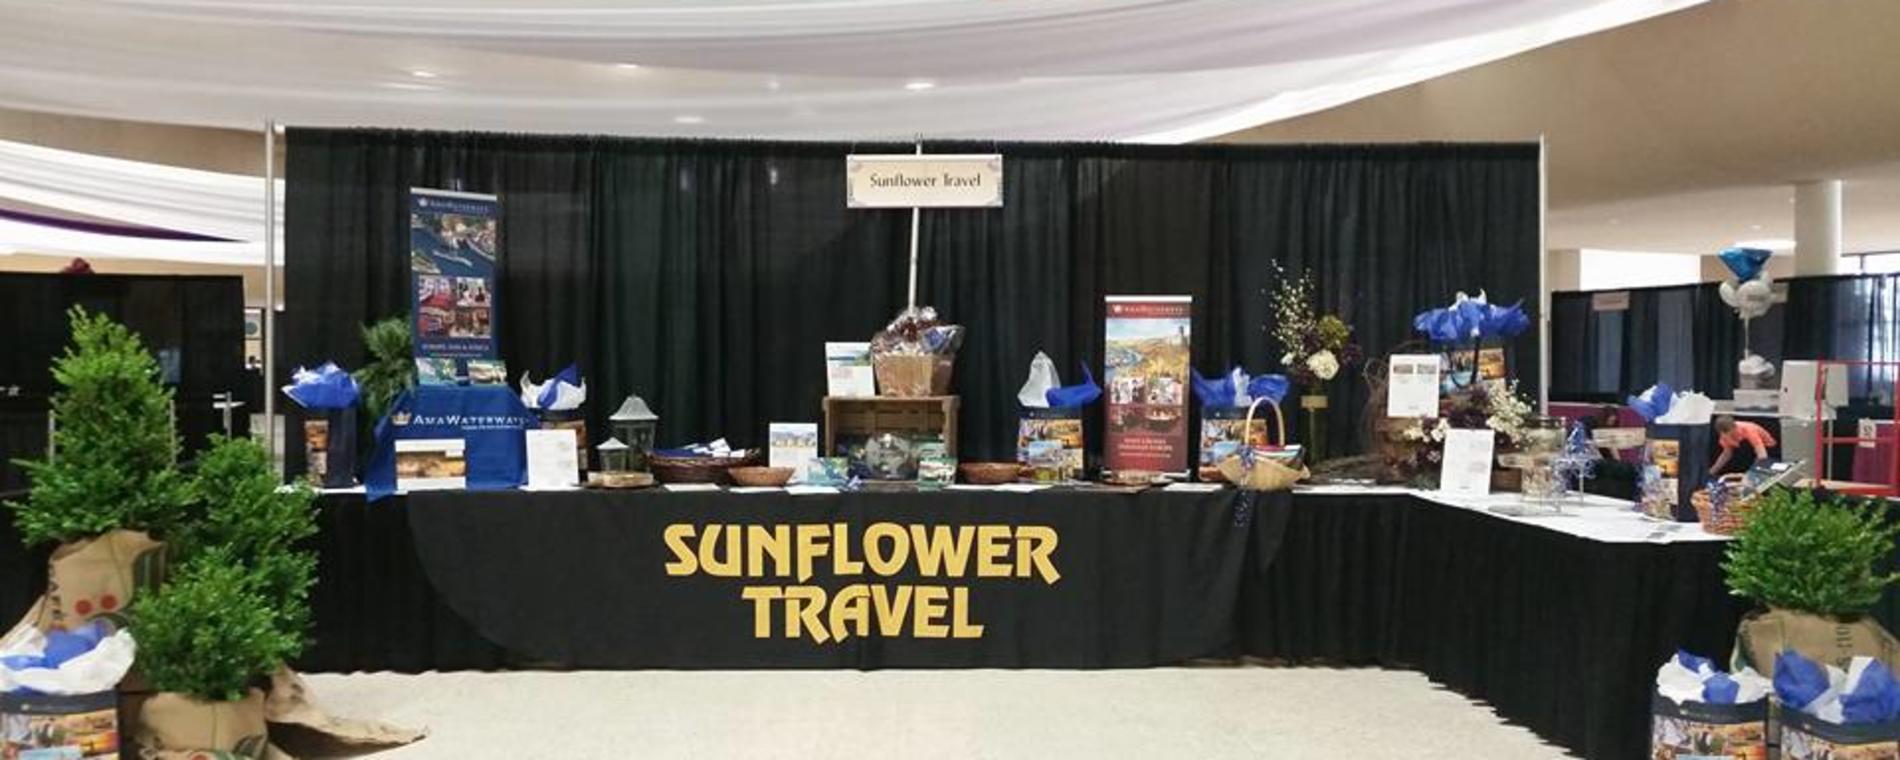 Sunflower Travel Exhibit Visit Wichita